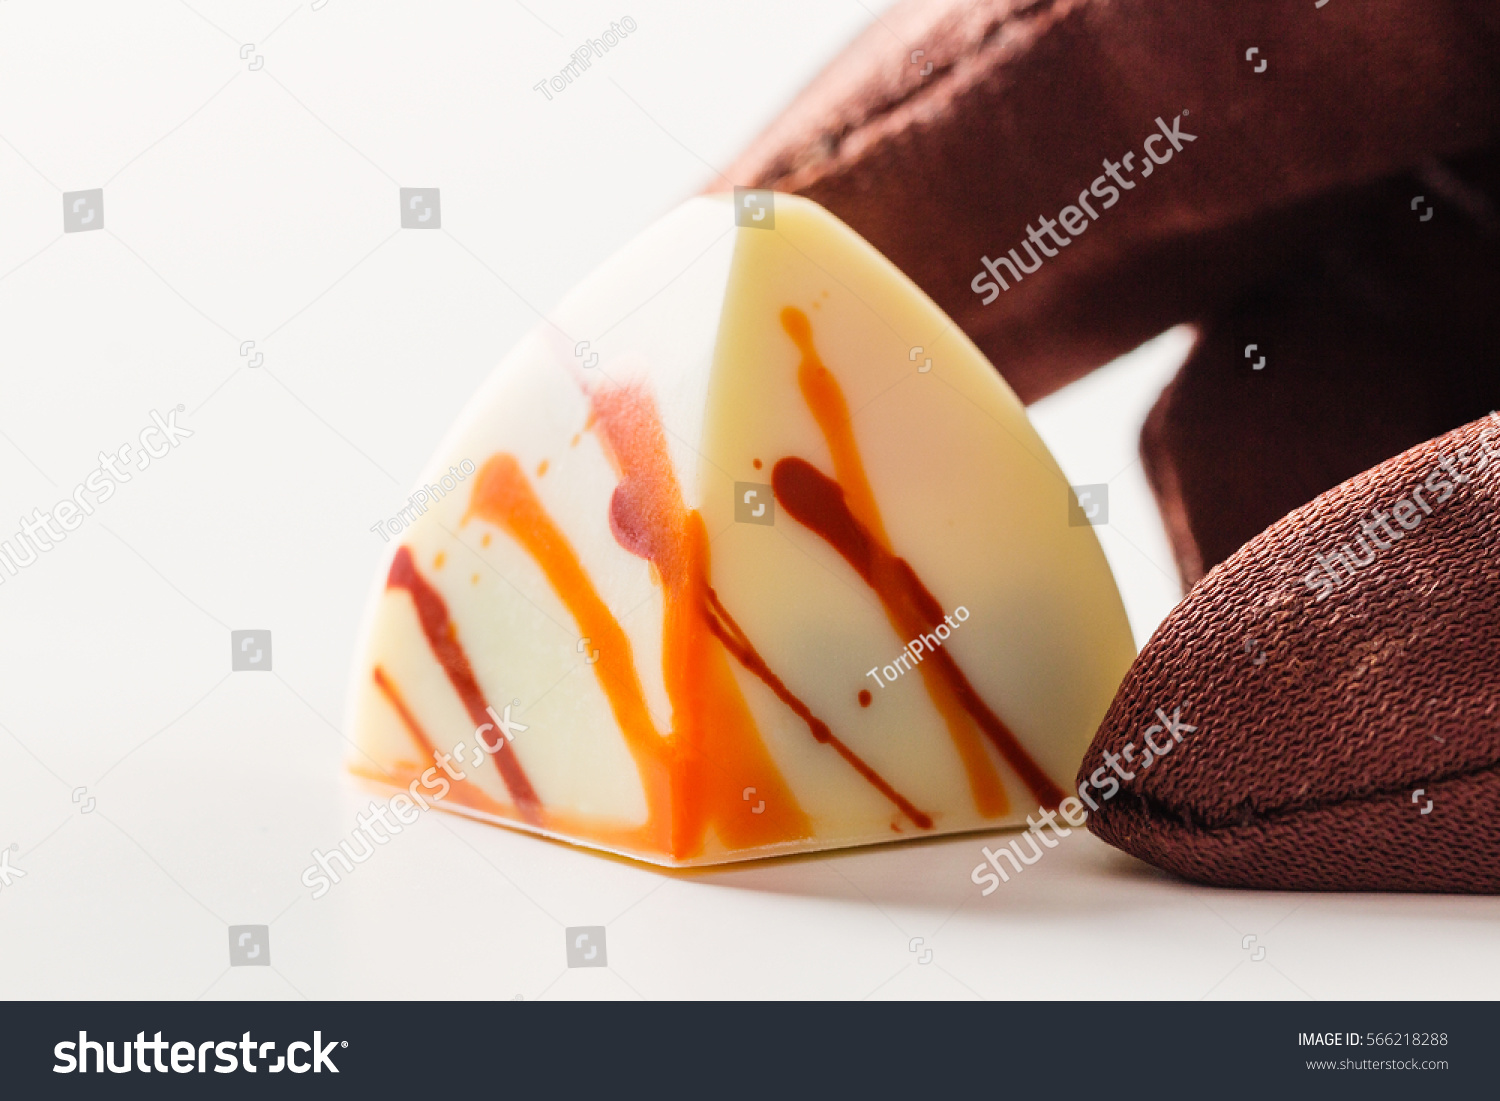 https://www.shutterstock.com/image-photo/white-chocolate-handmade-candy-orange-splashes-566218288